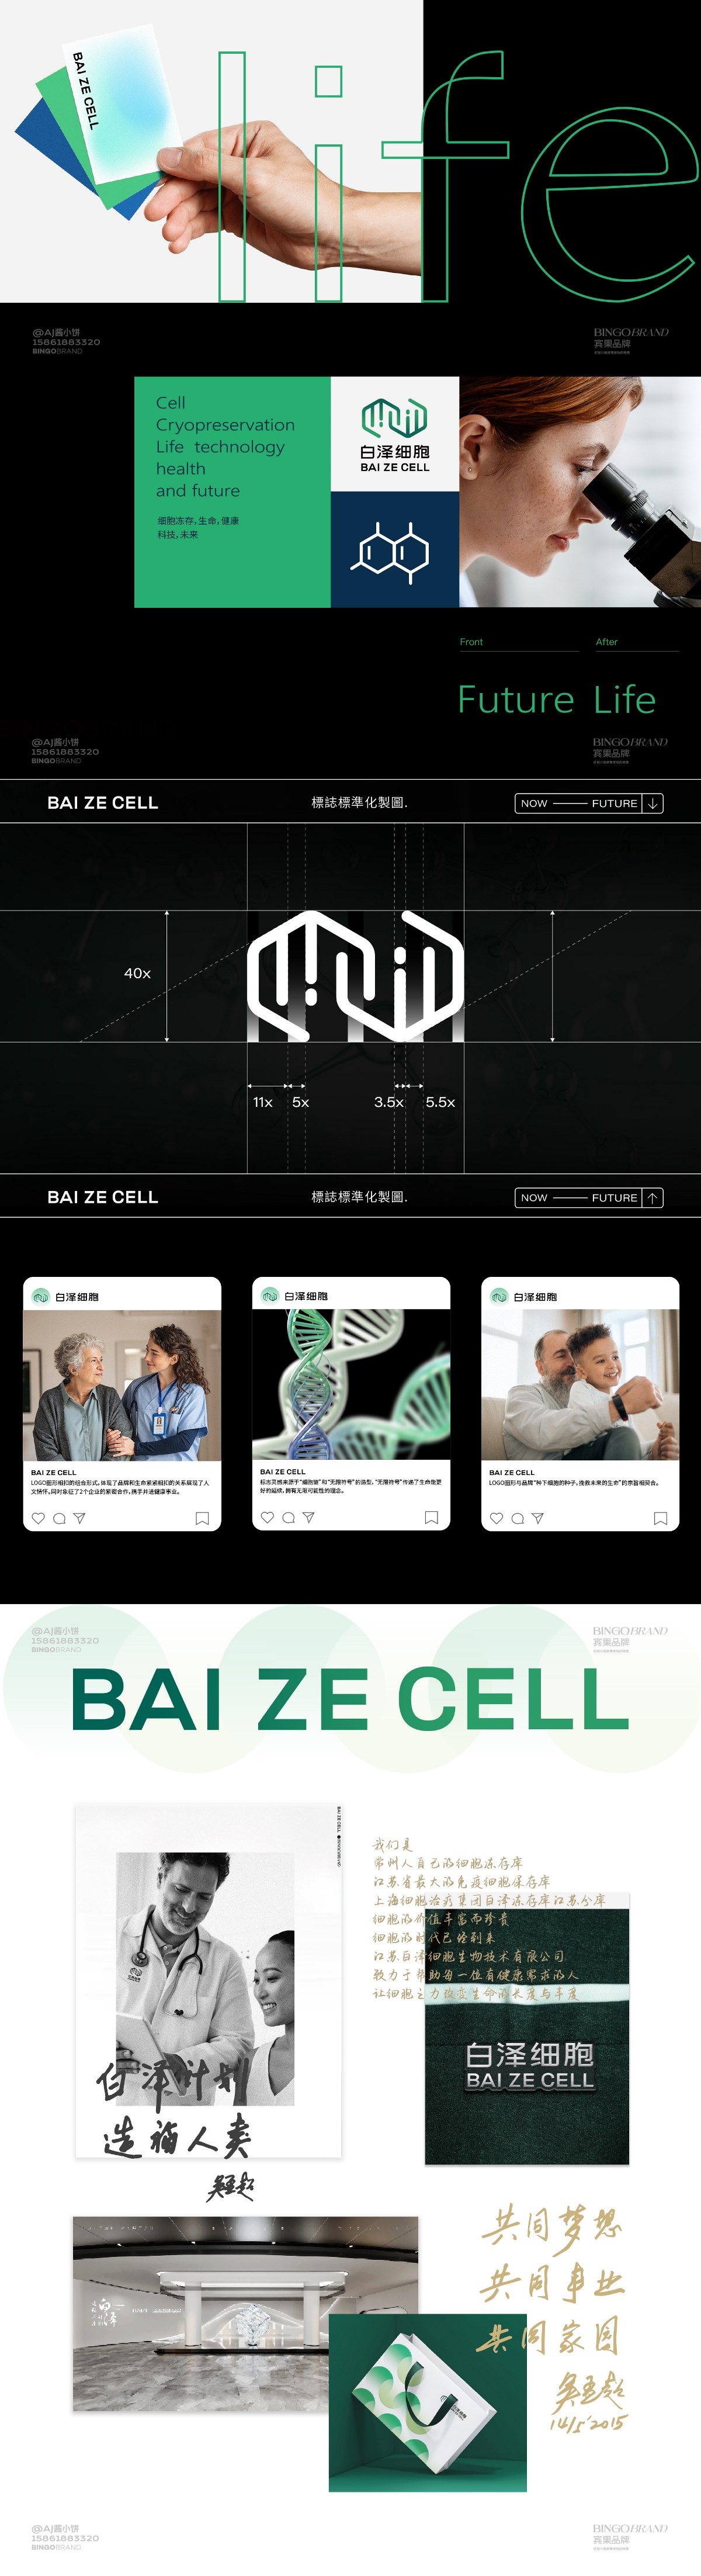 九洲集团_白泽细胞生物技术VI品牌全案设计产品包装